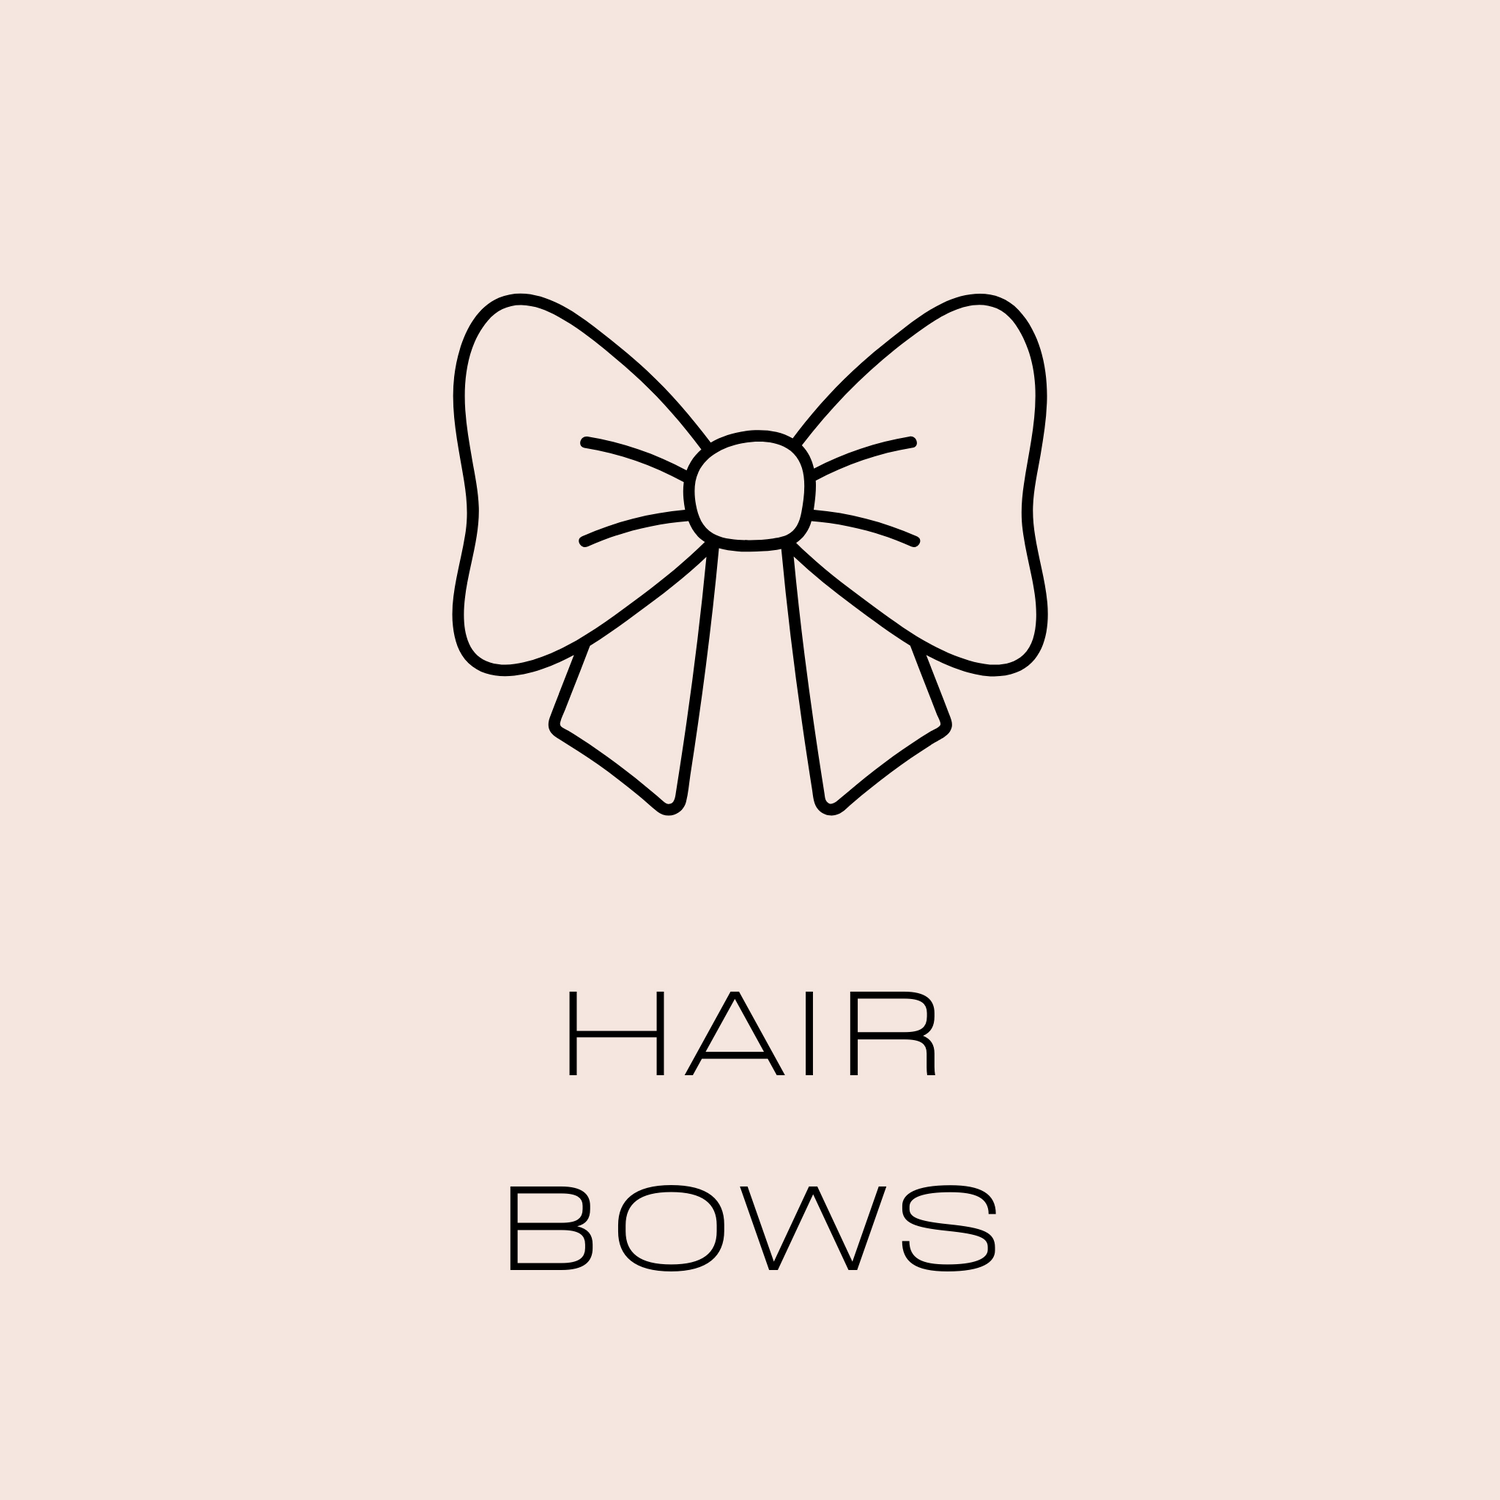 Jo Jo hair bows